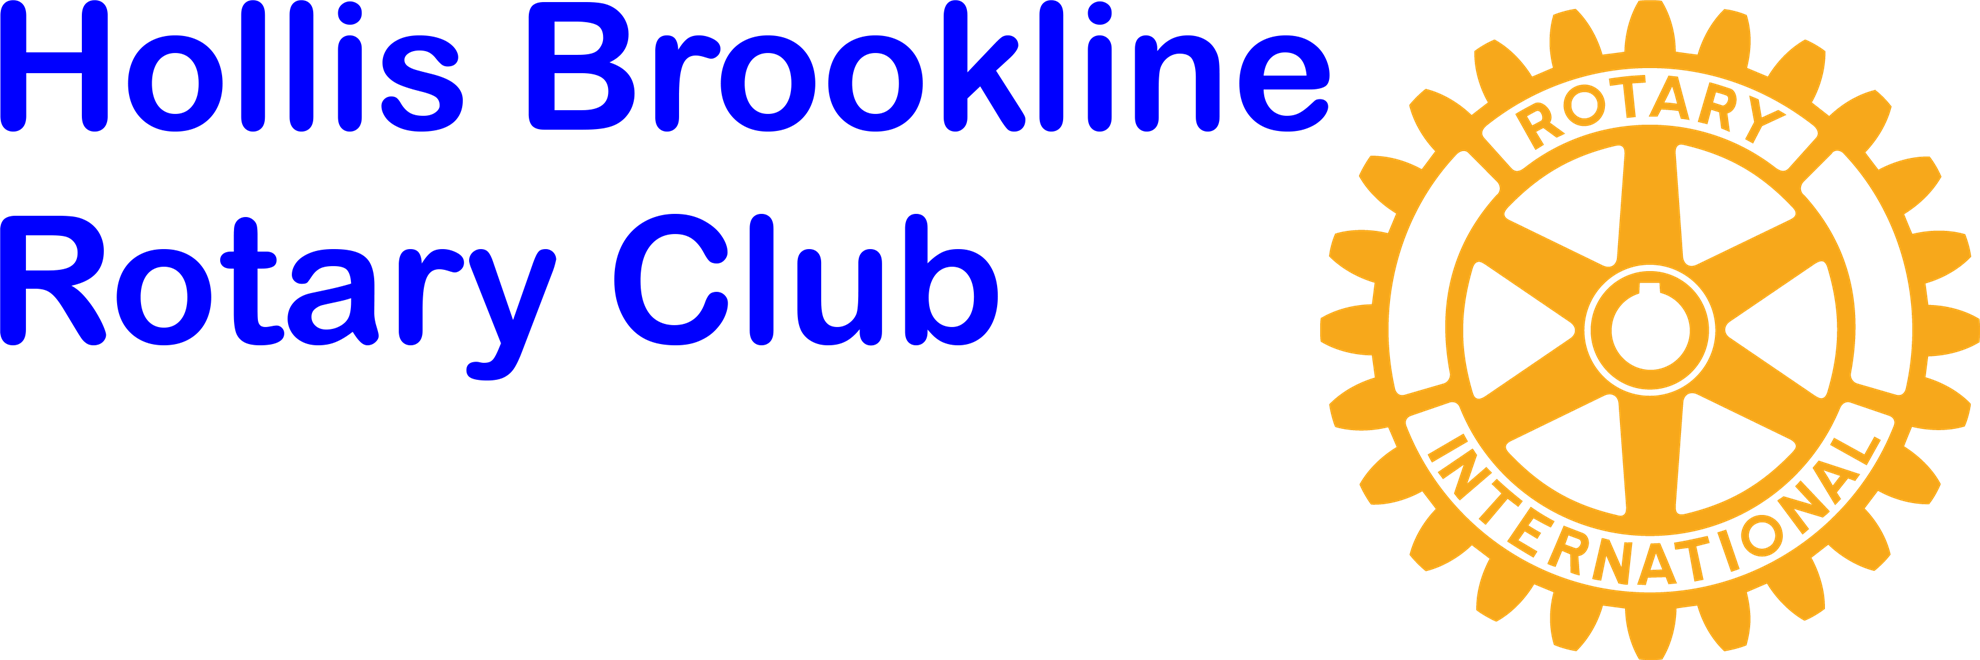 Hollis Brookline Rotary Club